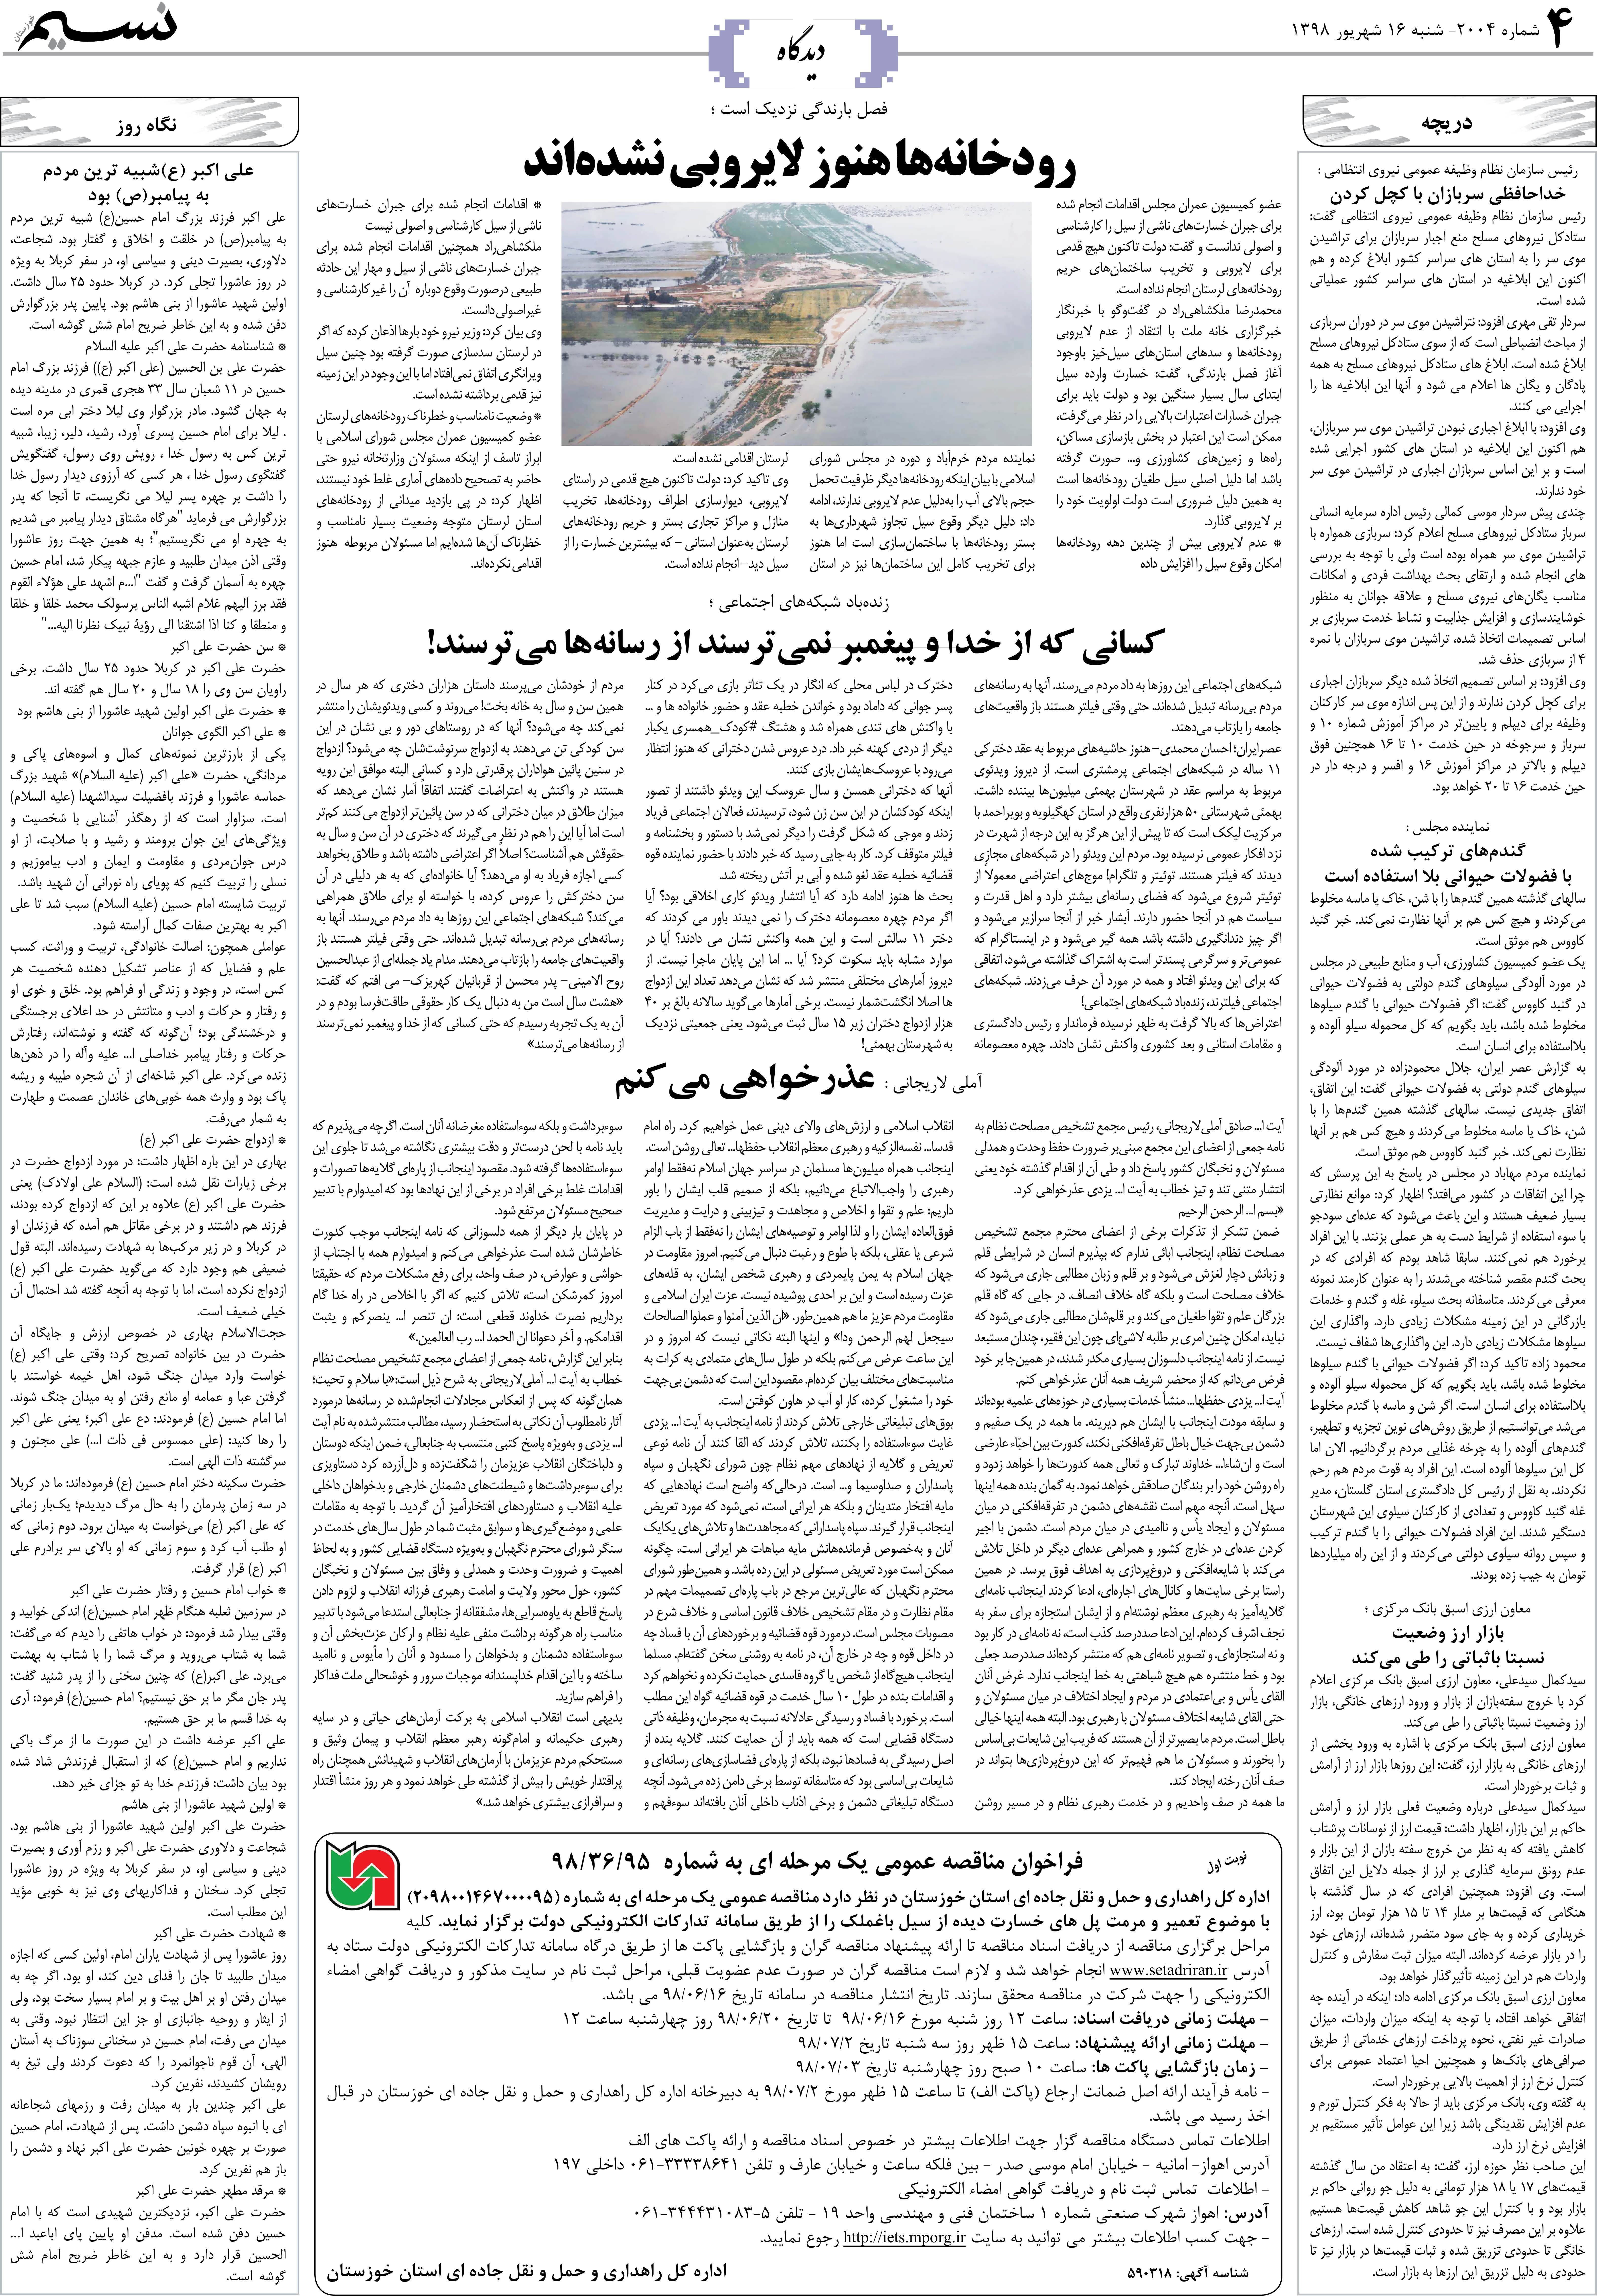 صفحه دیدگاه روزنامه نسیم شماره 2004